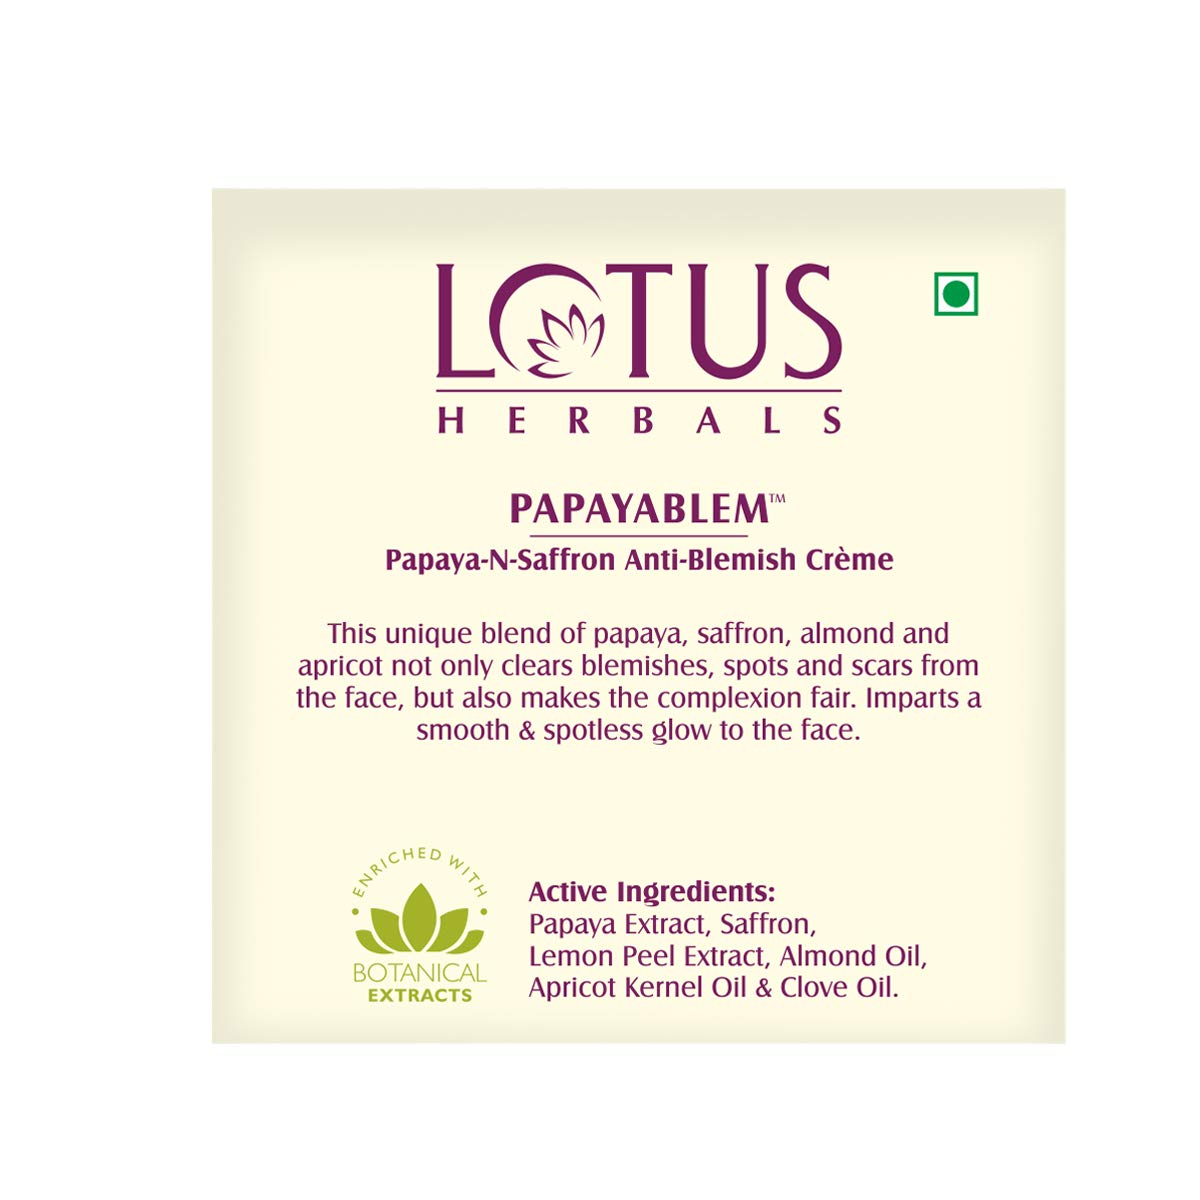 Lotus Herbals Papayablem Papaya-N-Saffron Anti-Blemish Creme (50gm)